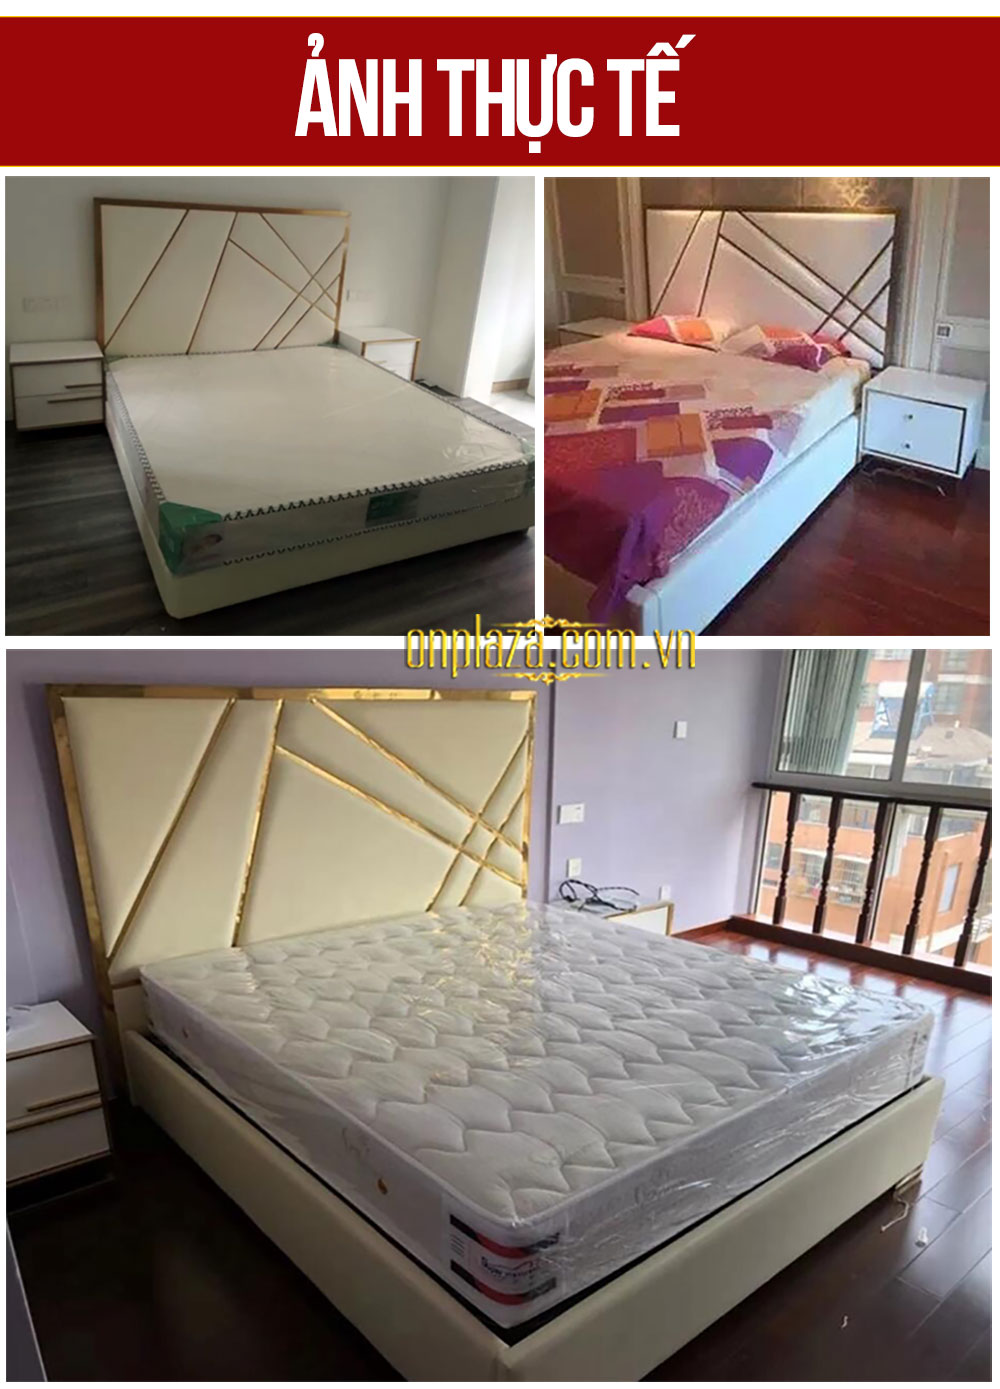 Bộ giường ngủ gỗ tự nhiên bọc da phối kim loại tinh tế phong cách thời trang hiện đại G162